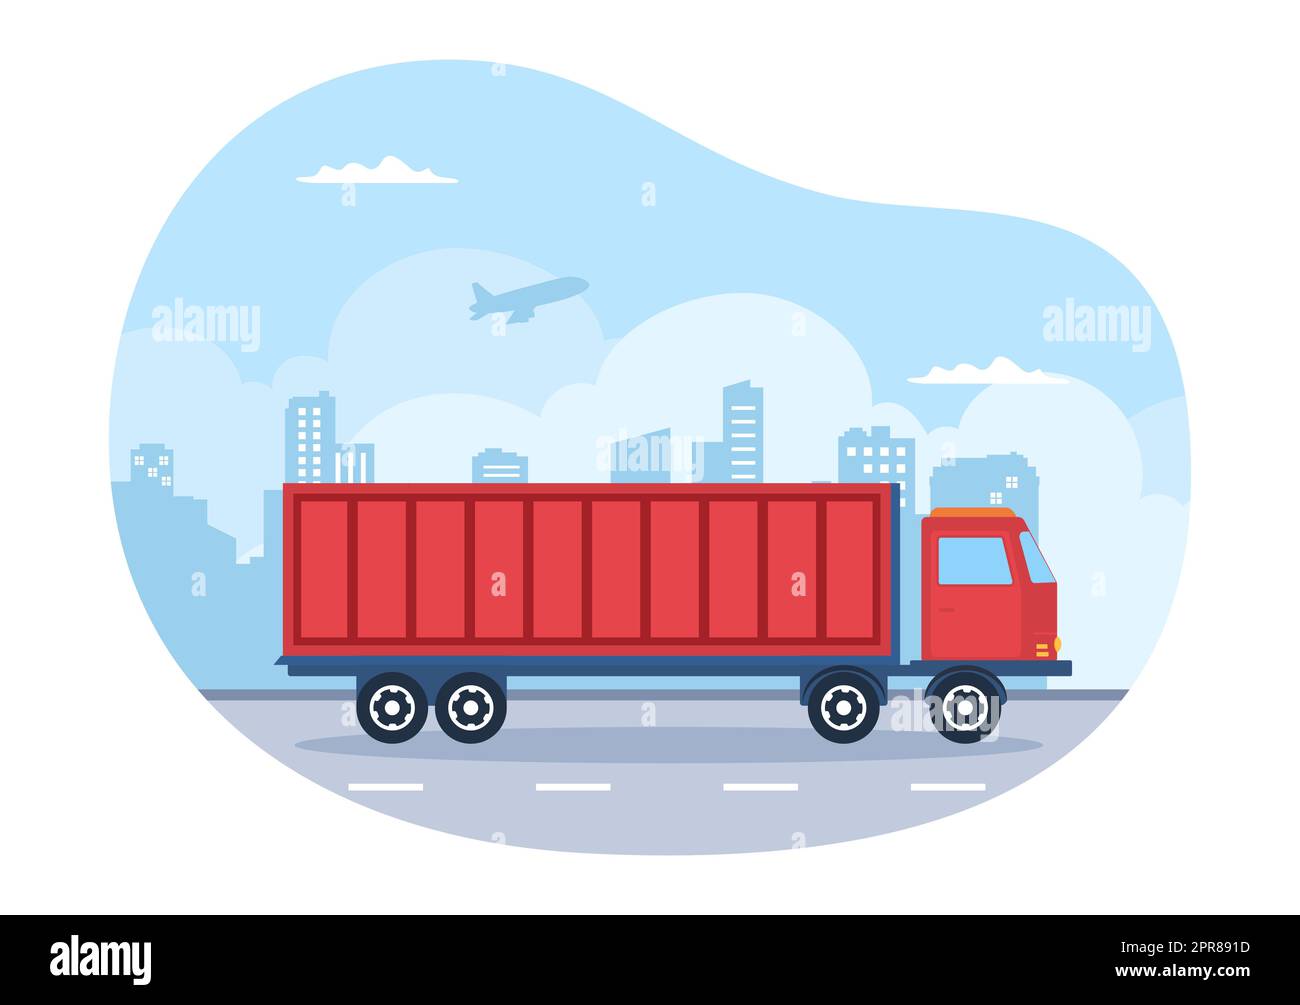 Trucking Transport Cartoon Illustration mit Cargo Delivery Services oder Cardboard Box an den Verbraucher in Flat Style Design gesendet Stockfoto